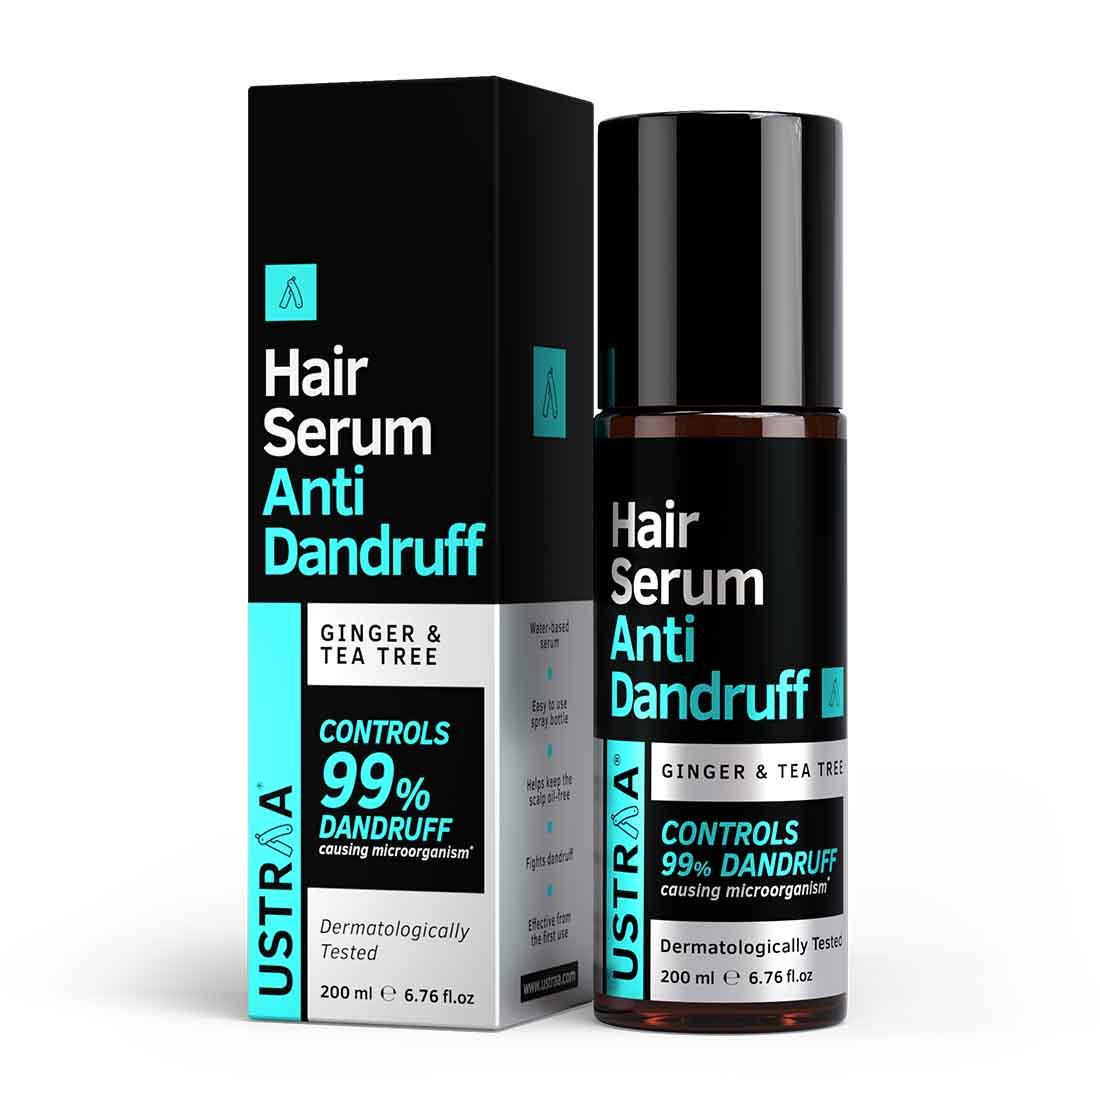 Ustraa Anti-Dandruff Hair Serum For Men: With Anti-Fungal Properties